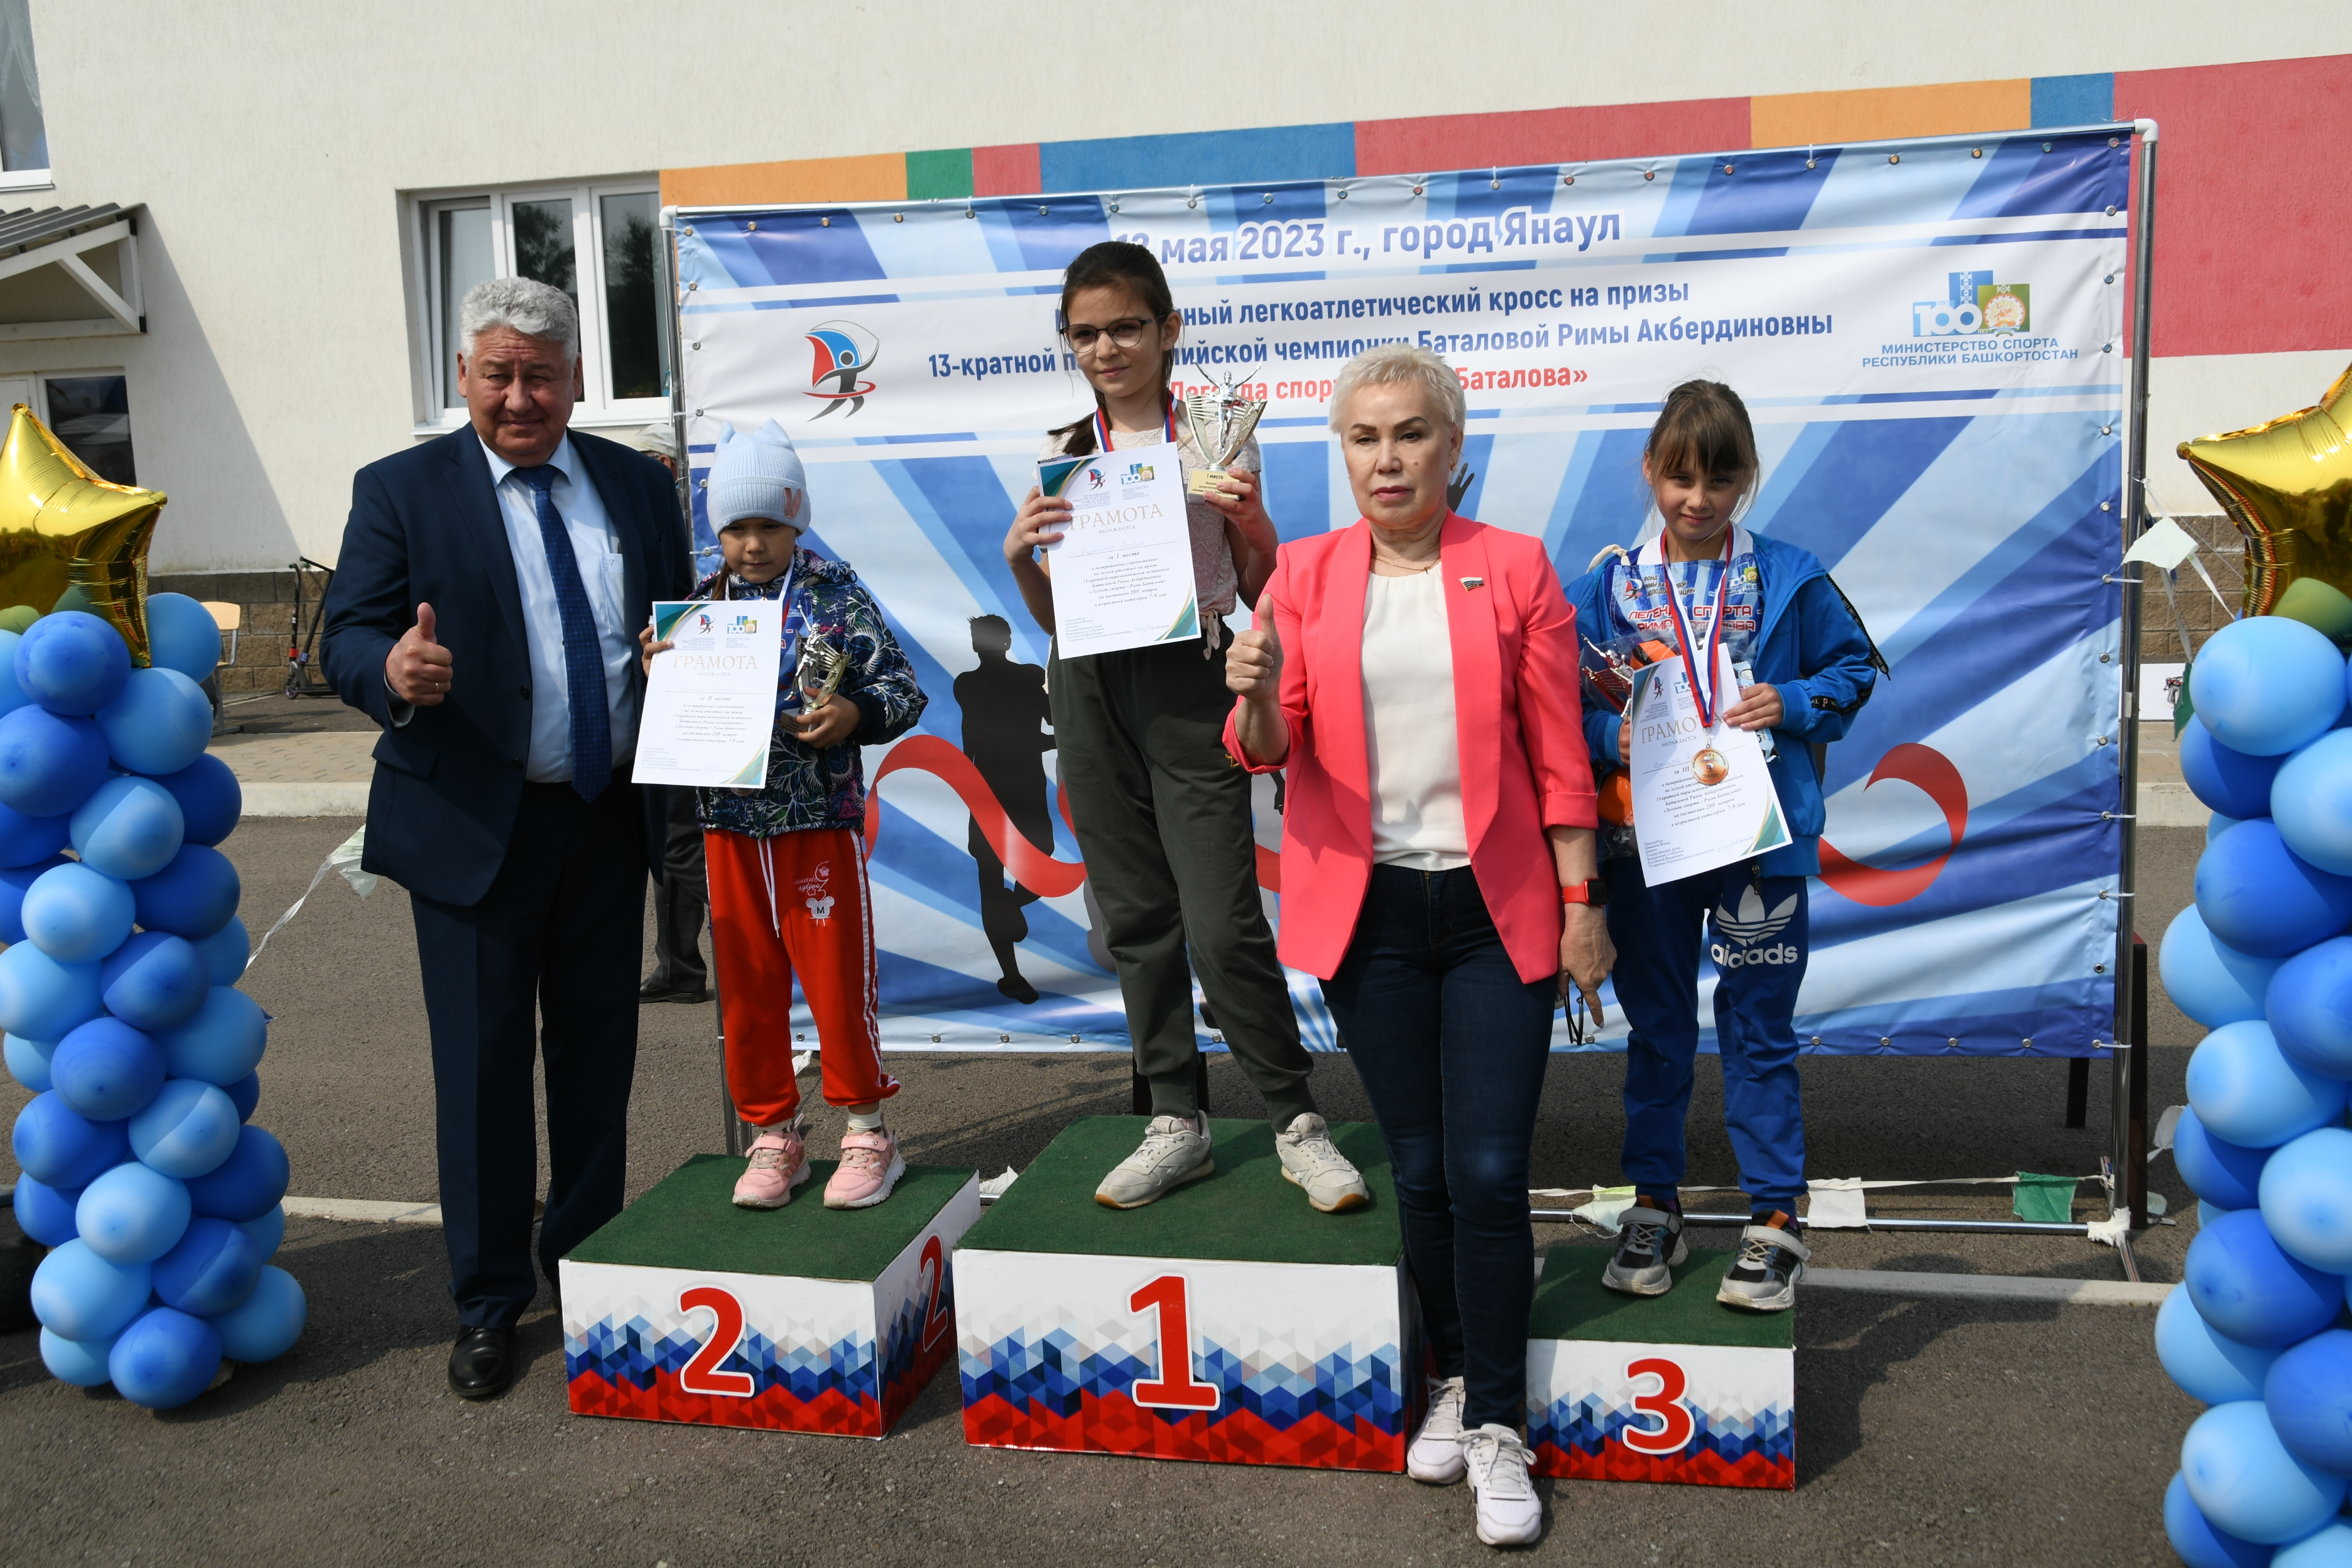 В Янауле состоялся межрайонный легкоатлетический кросс на призы 13-кратной паралимпийской чемпионки Римы Баталовой